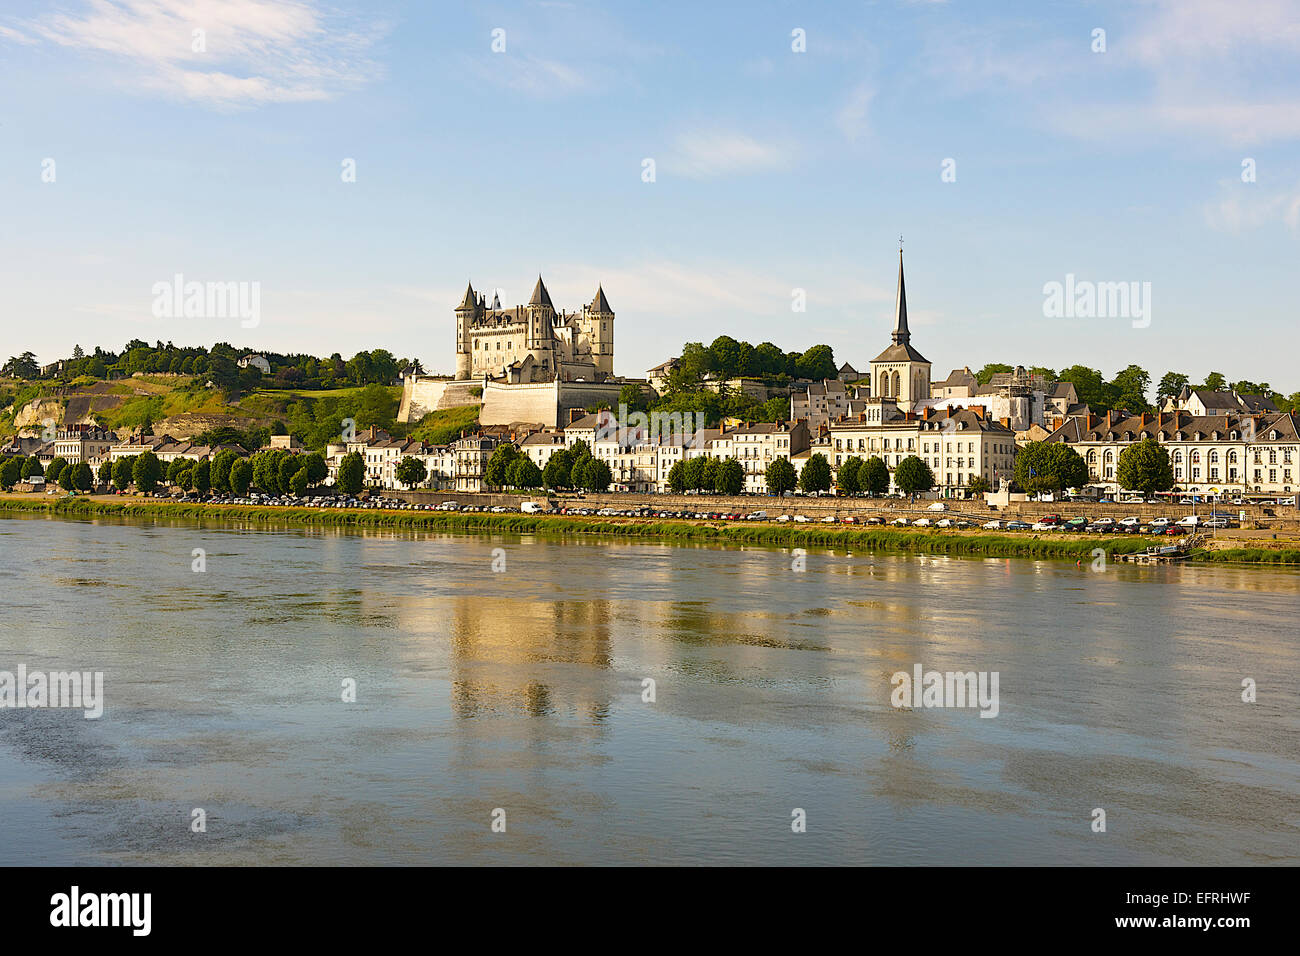 Chateau de Saumur and Loire River, Saumur, France Stock Photo